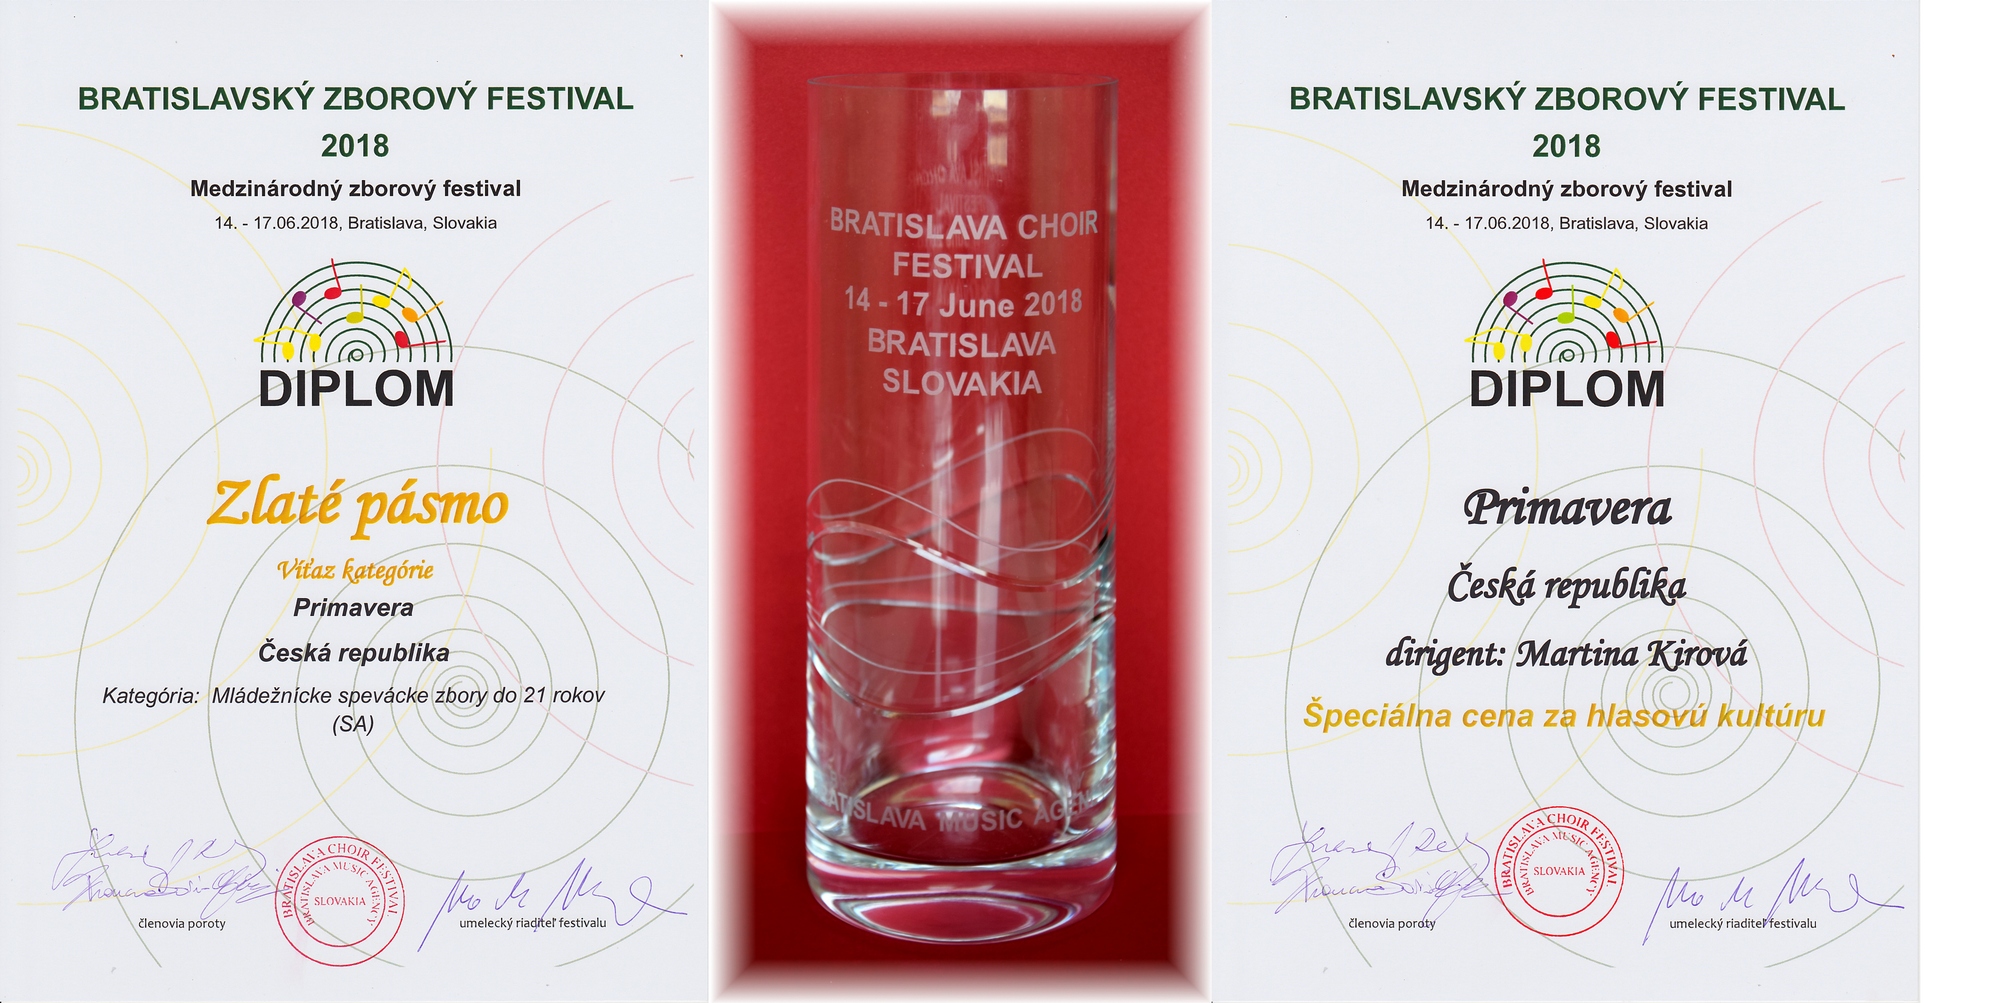 Bratislava Choir Festival 2018:  Zlaté pásmo a vítěz kategorie mládežnické pěvecké sbory, Speciální cena za hlasovou kulturu